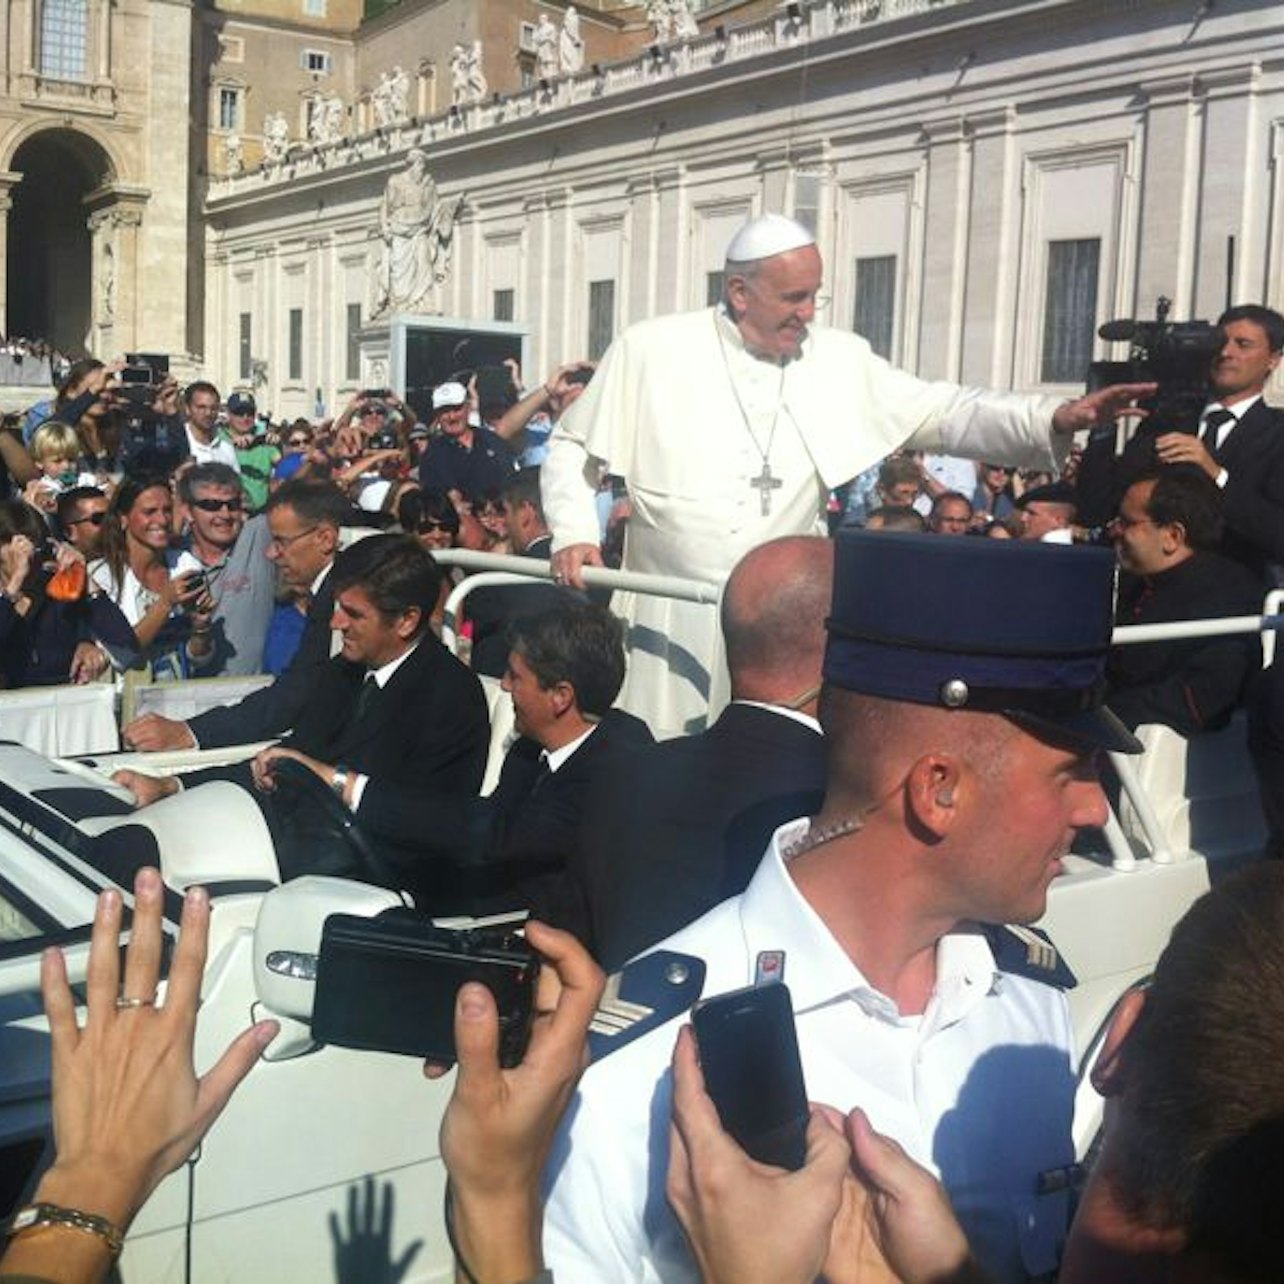 Audiência Papal e Basílica de São Pedro: Visita Guiada - Acomodações em Roma